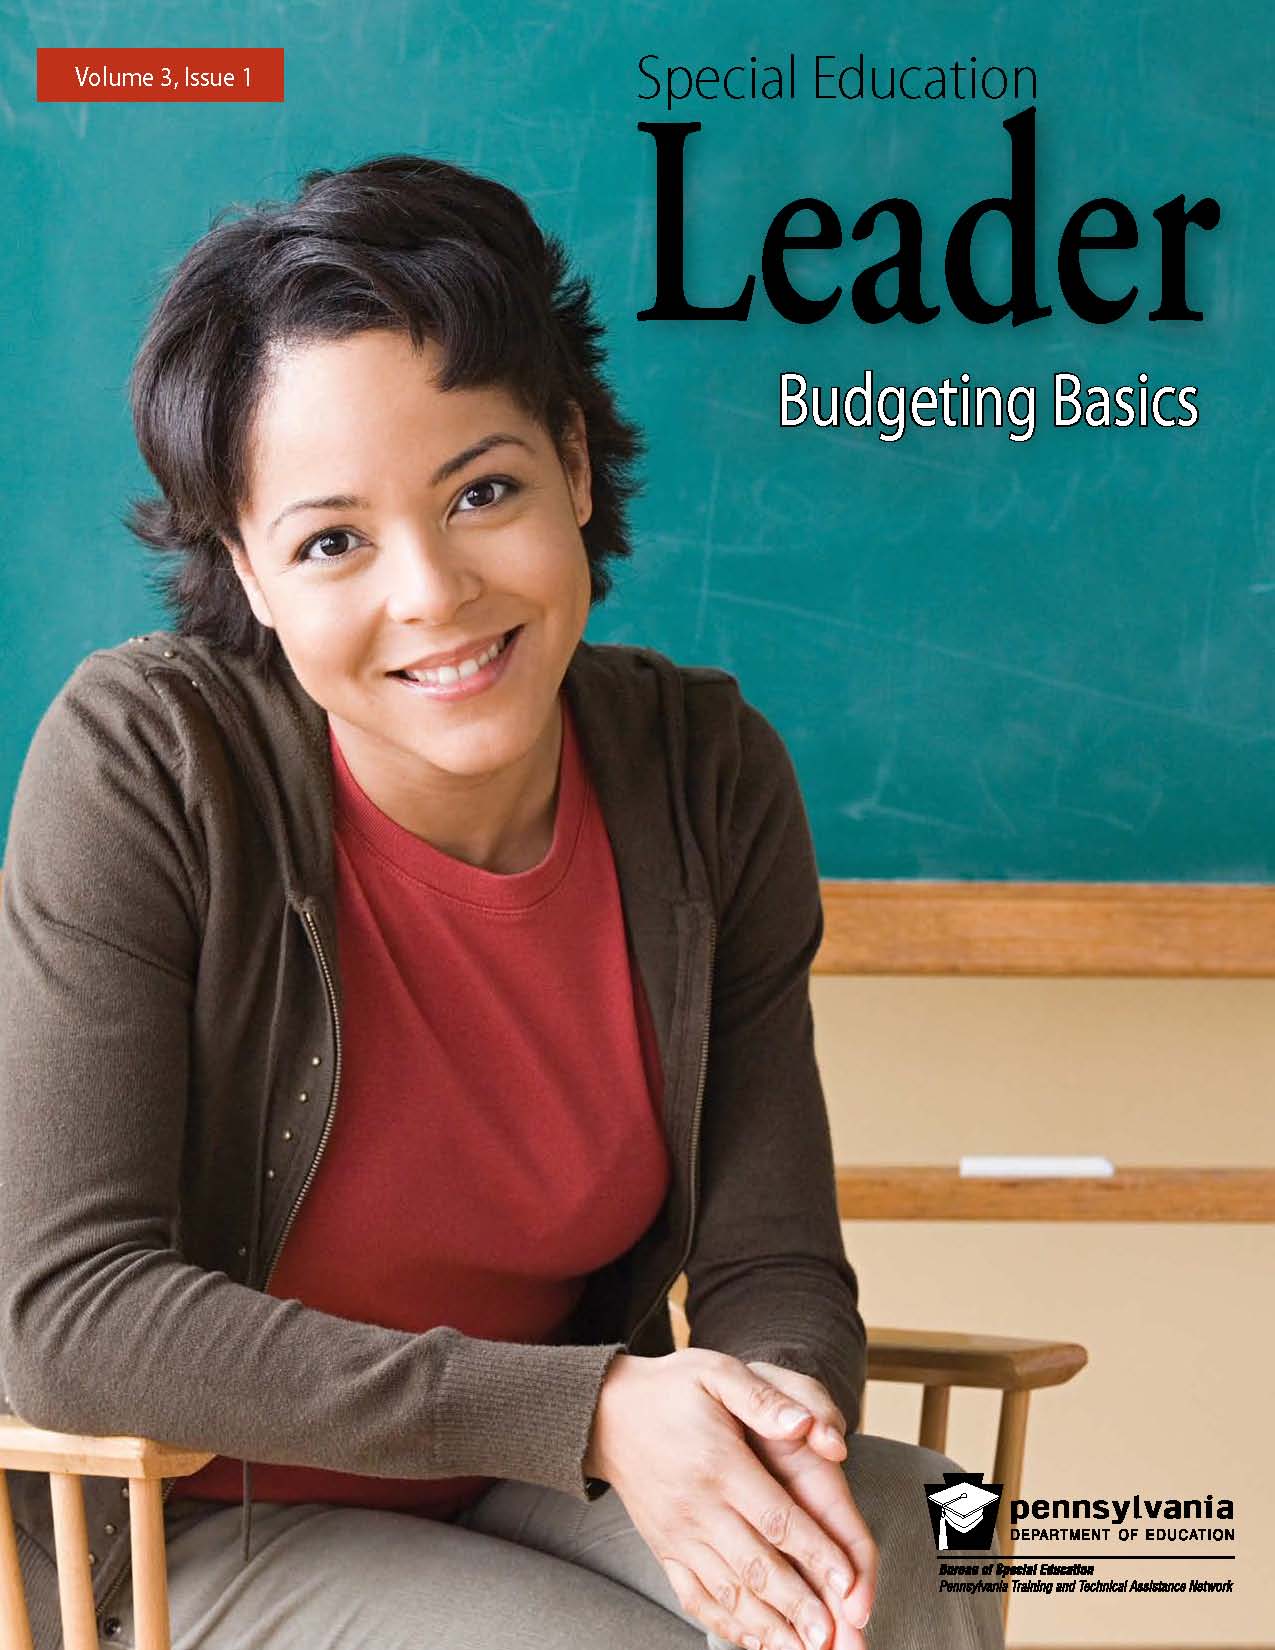 Education Leader - Budgeting Basics